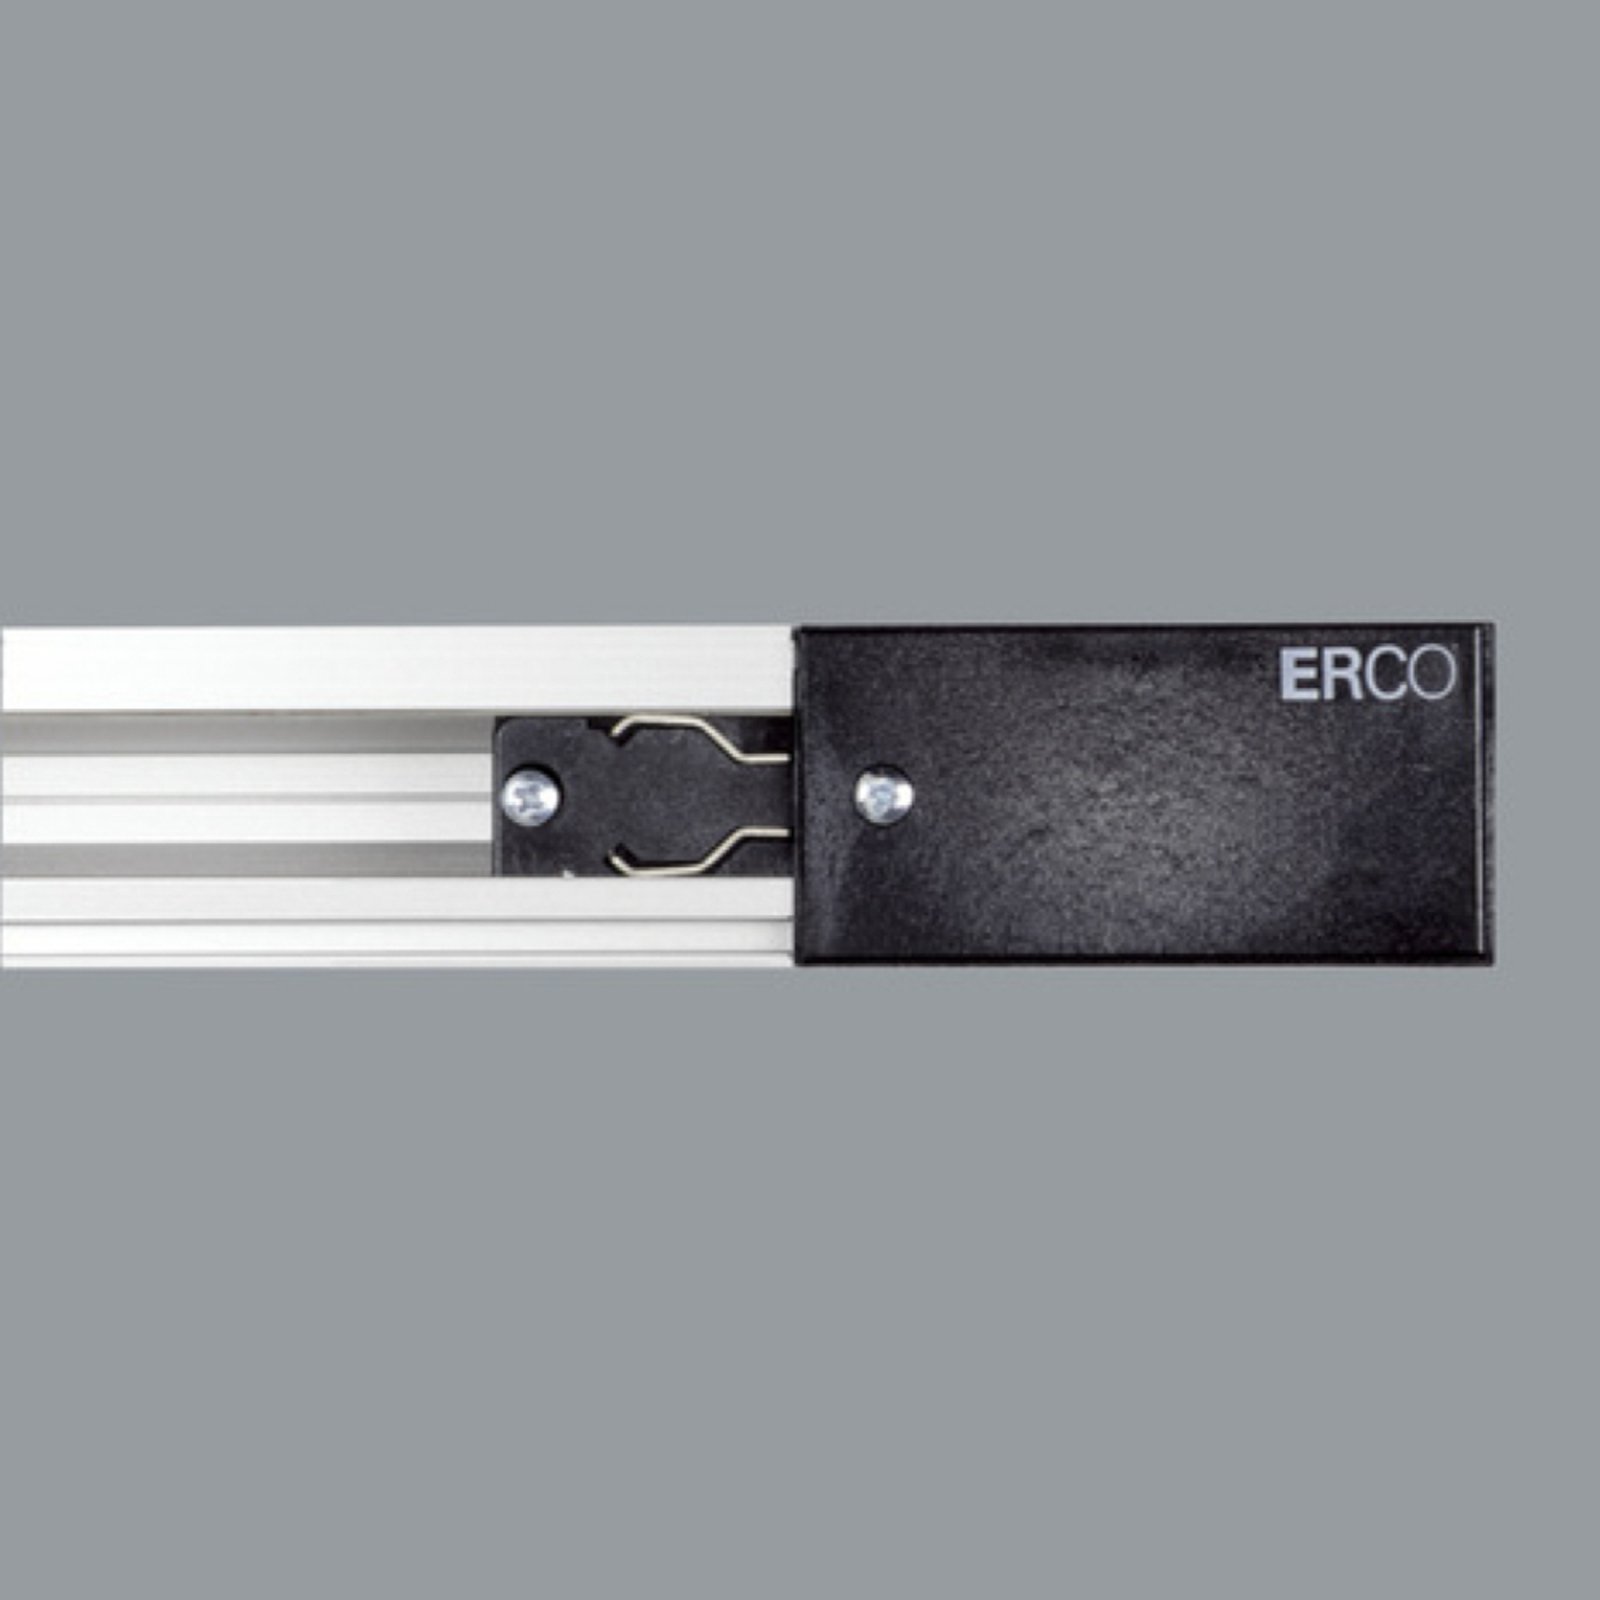 ERCO 3-fas-anslutning skyddsledare vänster svart